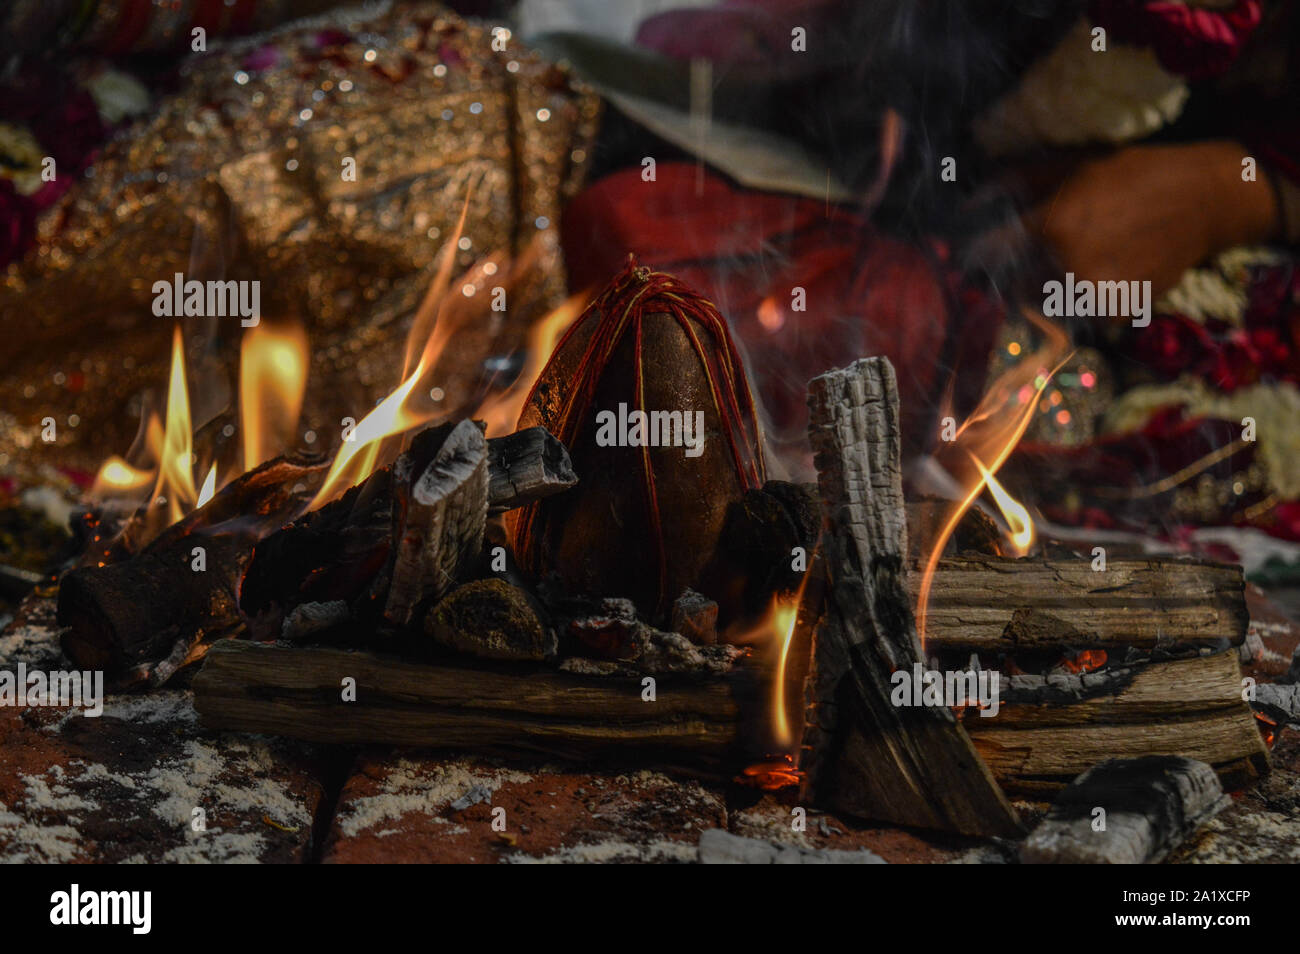 Il Cocco sul fuoco in uno dei rituali nel matrimonio indiano. Foto Stock